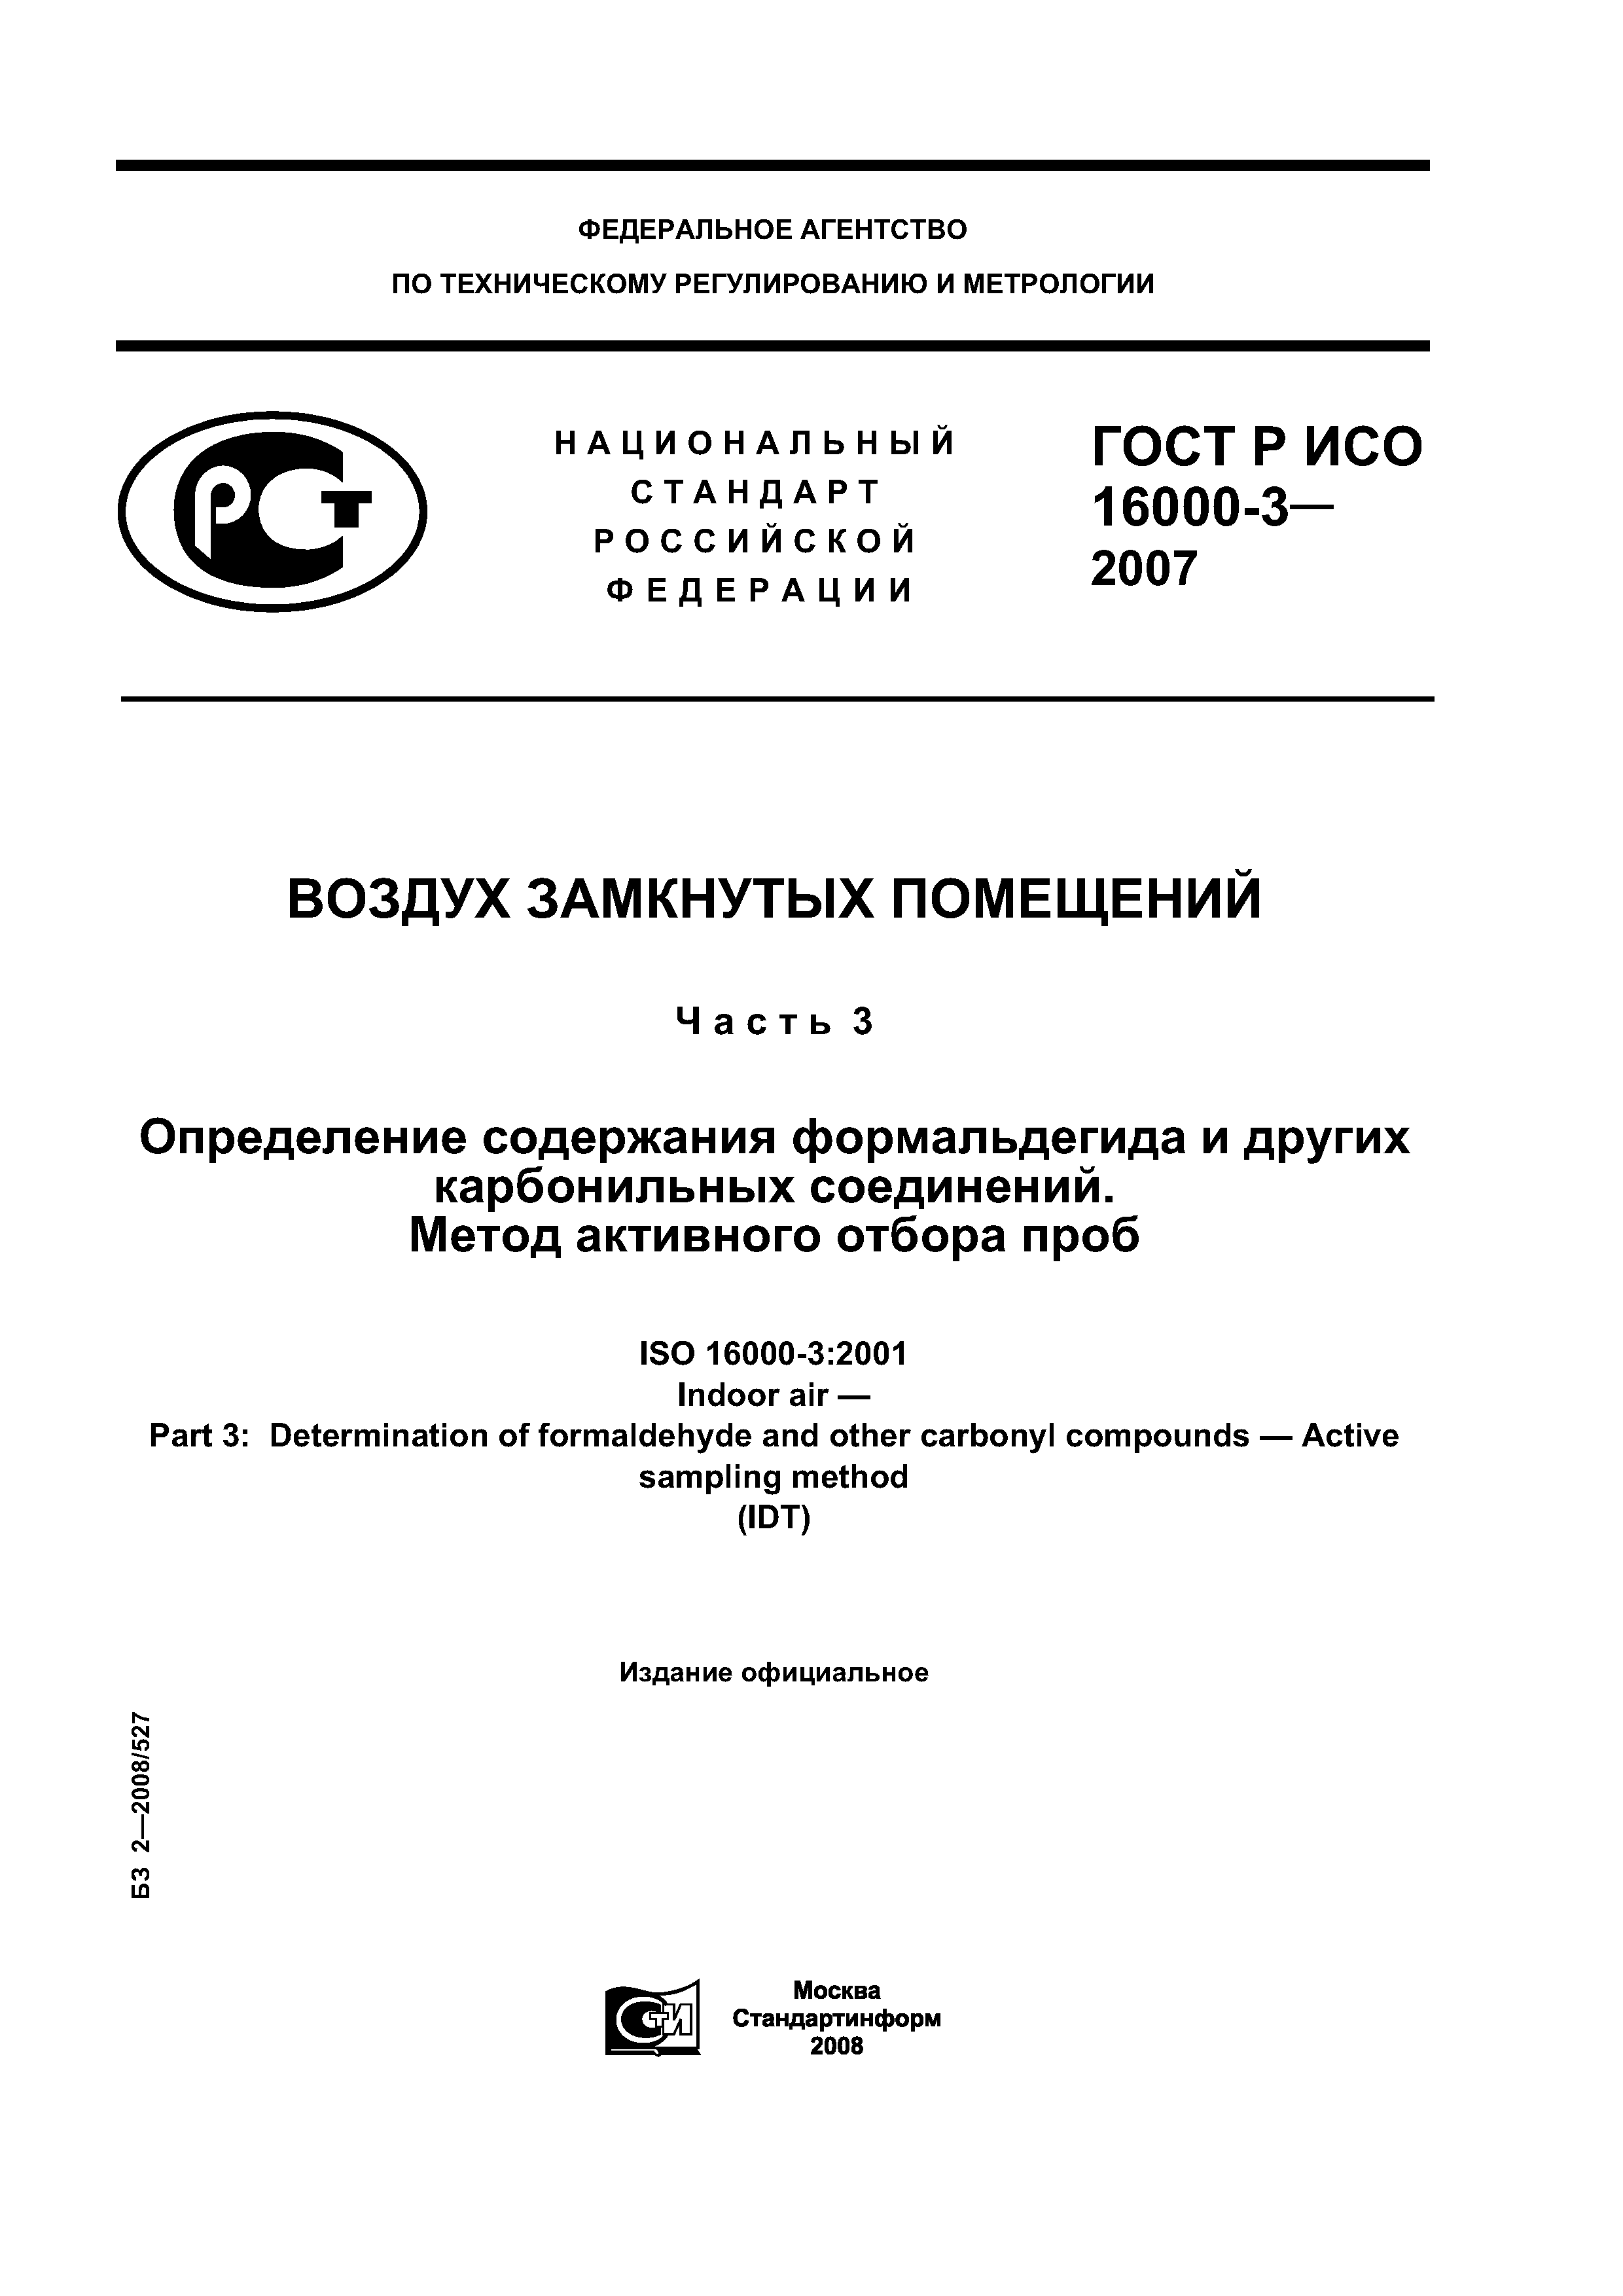 ГОСТ Р ИСО 16000-3-2007